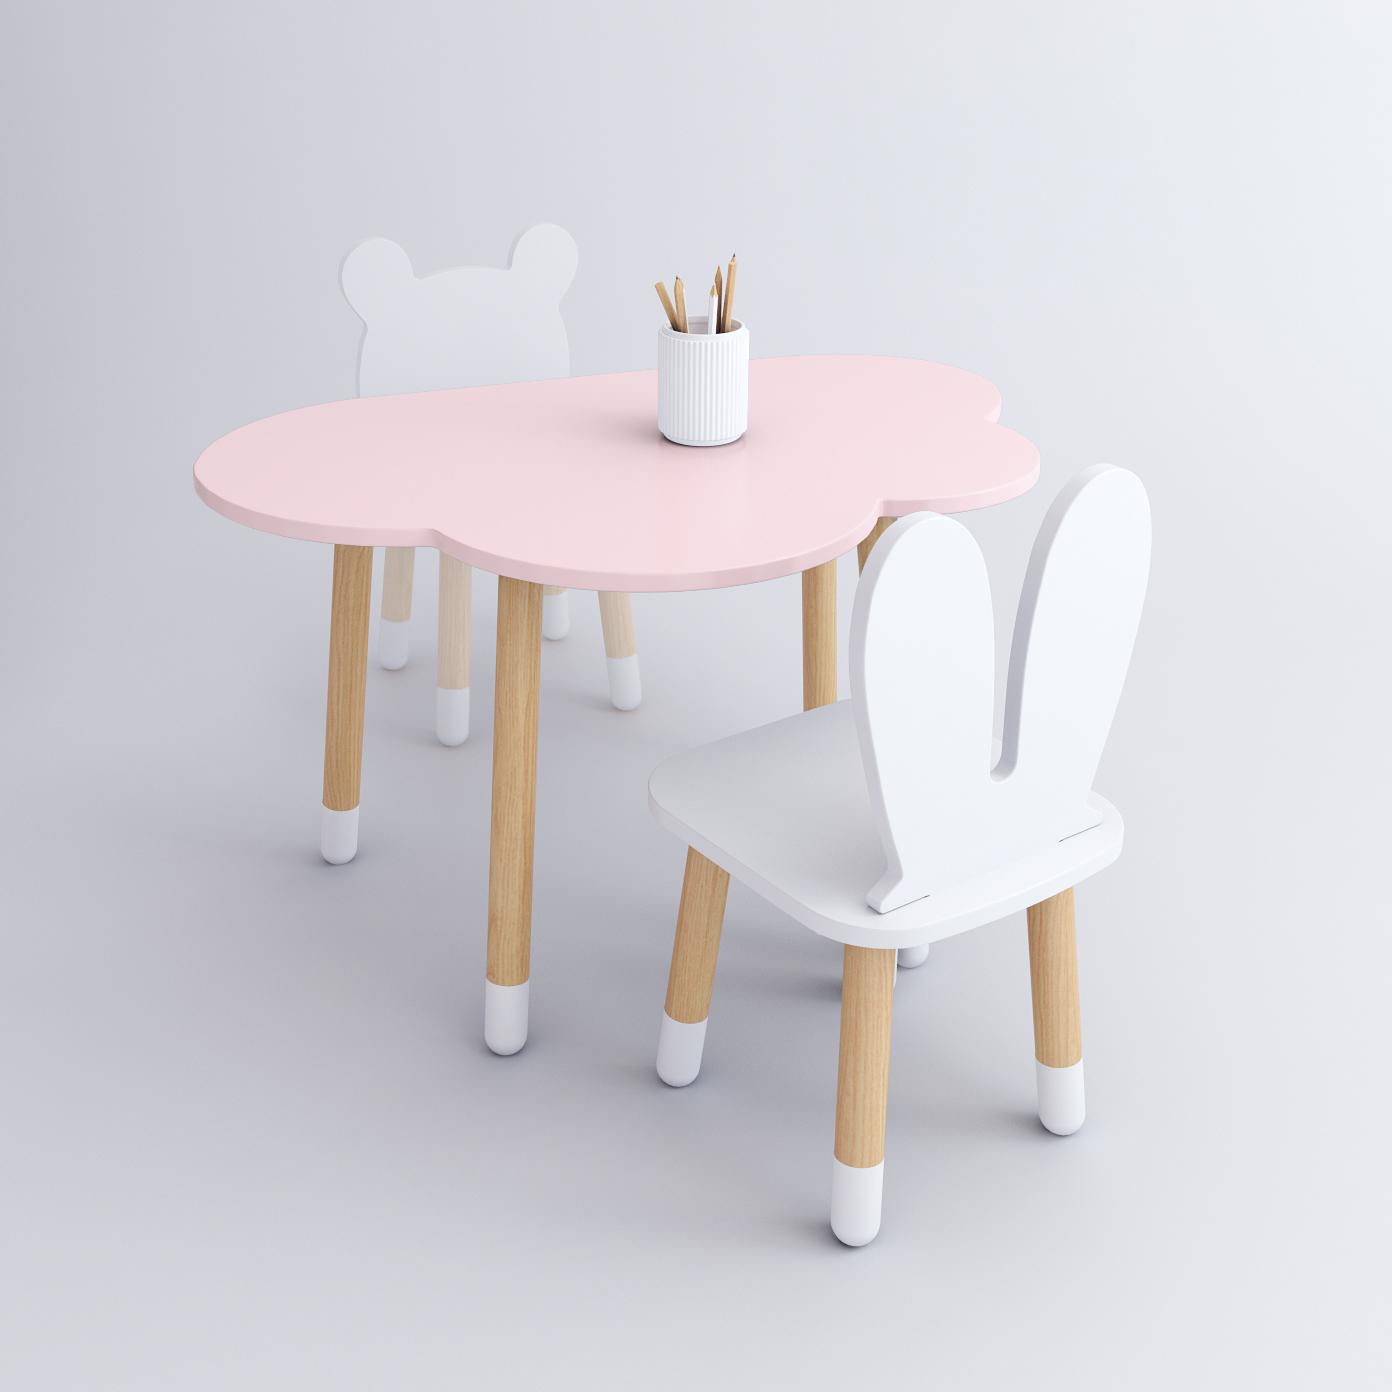 Комплект детской мебели DIMDOM kids, стол Облако розовый, стул Зайка белый комплект детской мебели rules столик облачко и стульчик зайка белая и розовая эмаль